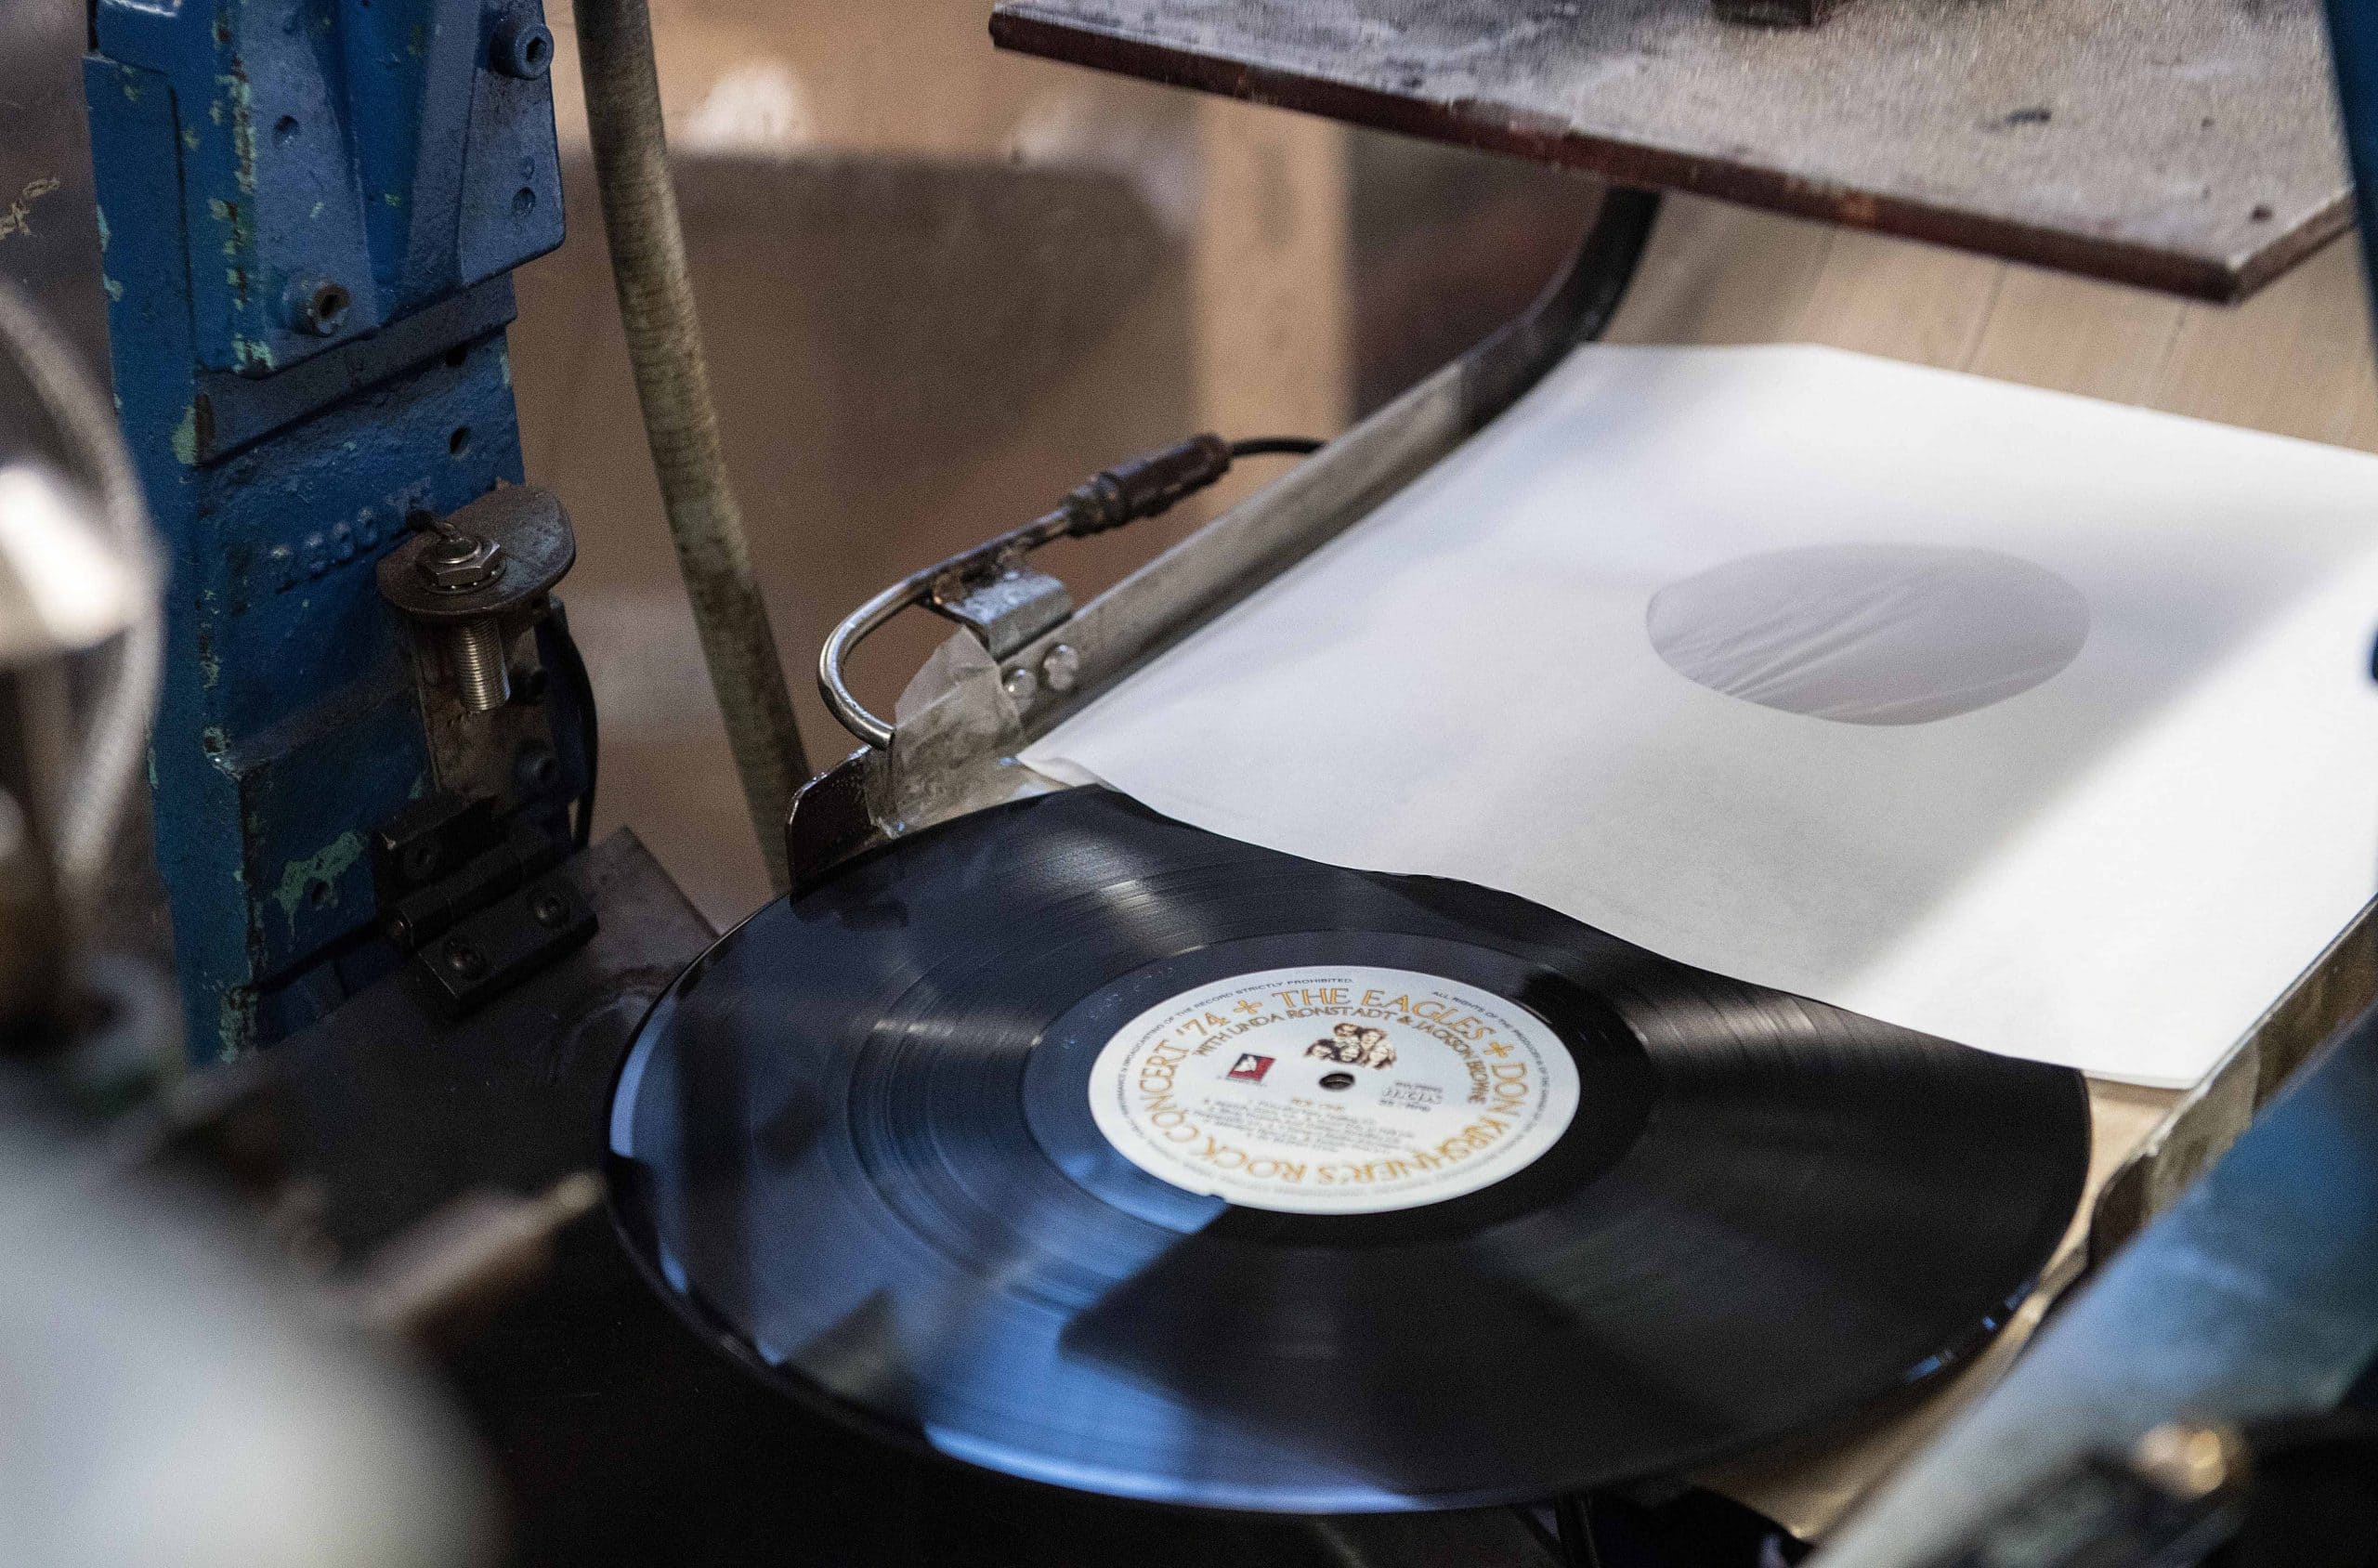 Vinyl being pressed